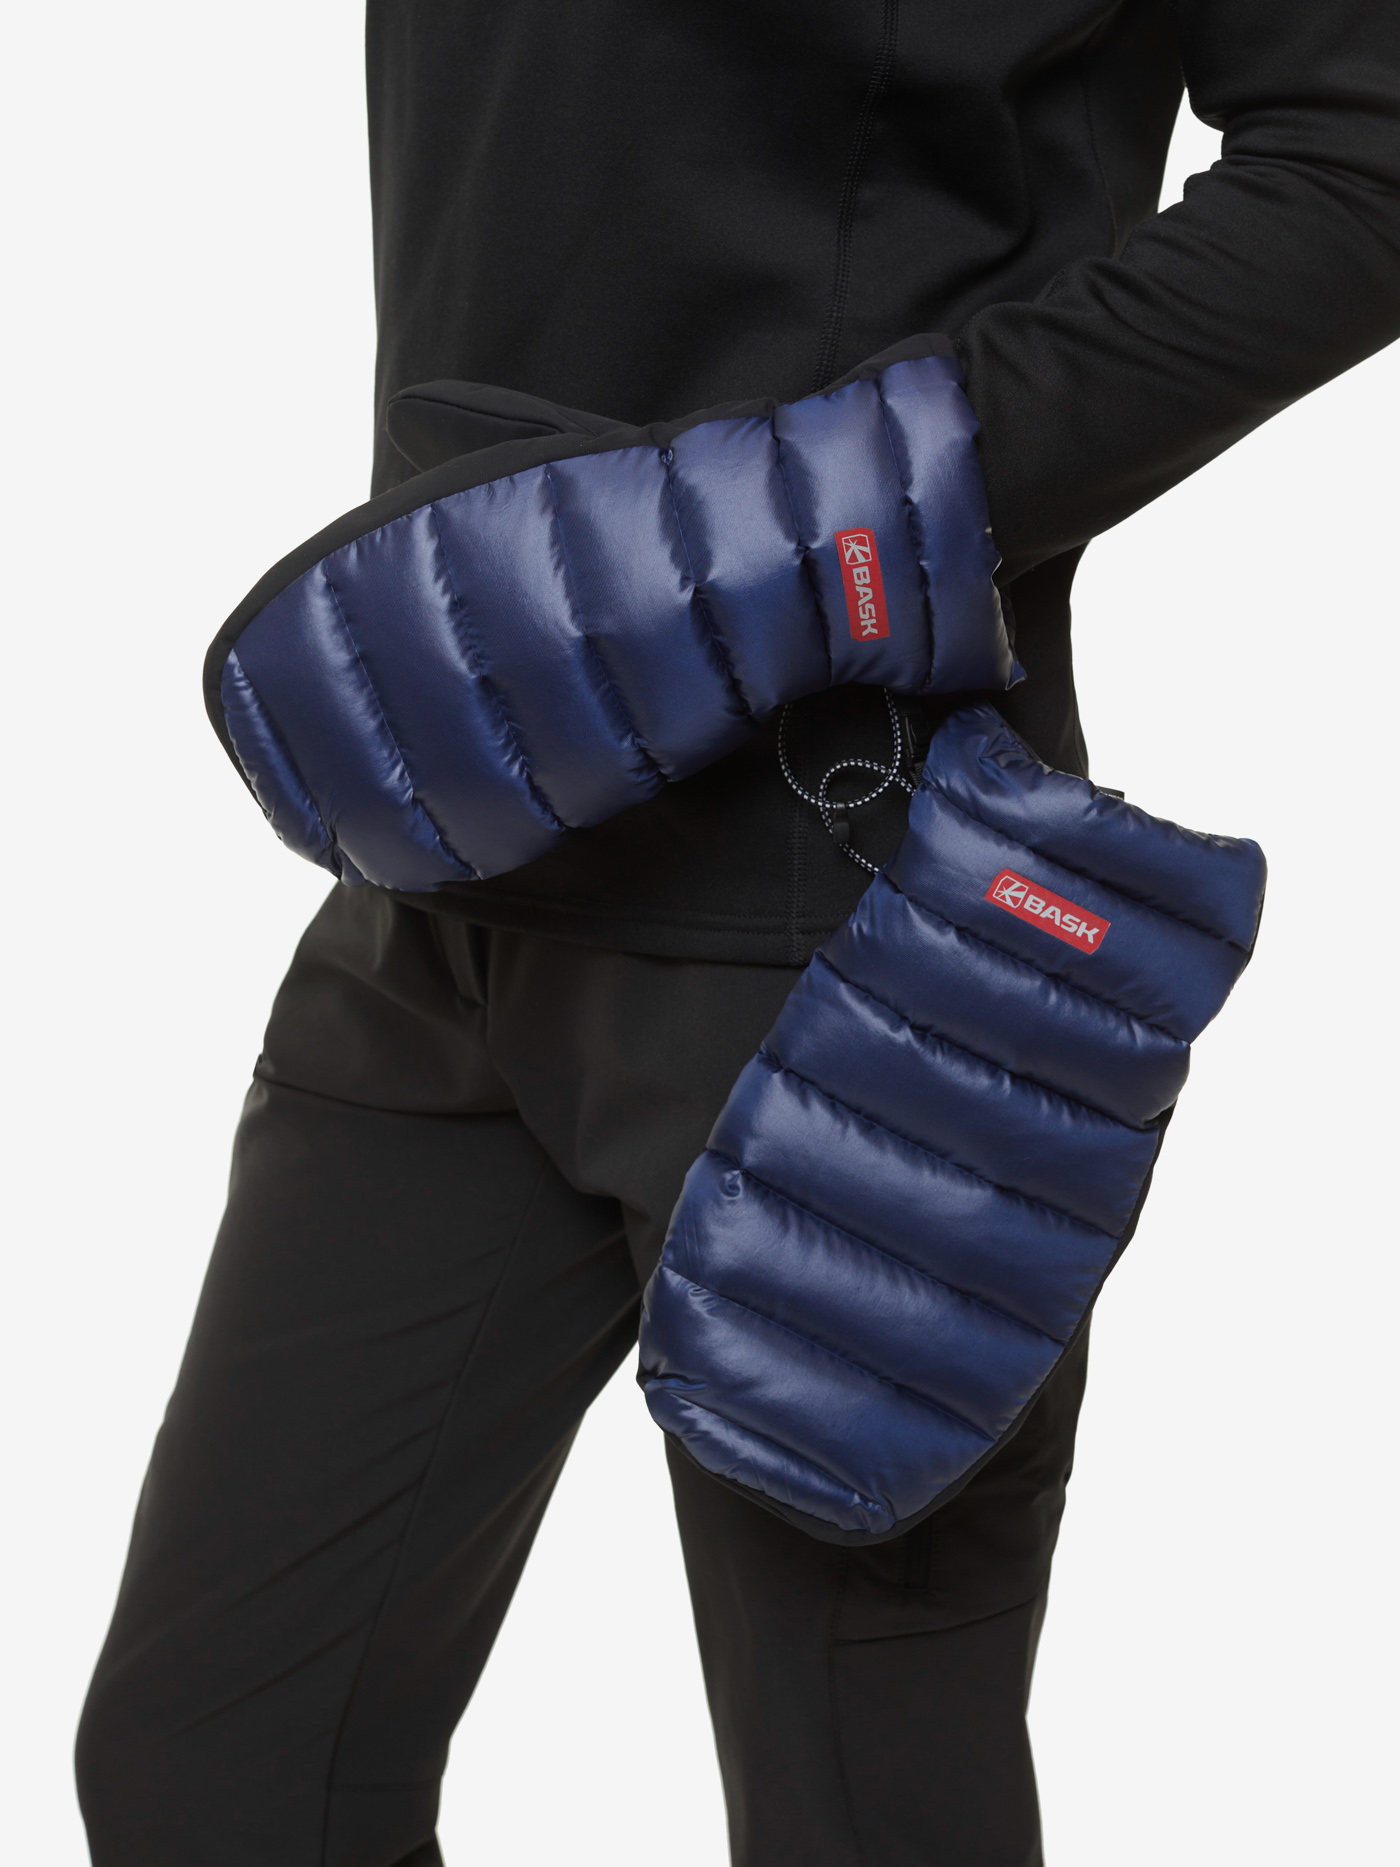 Пуховые рукавицы BASK, размер M, цвет колониальный синий 19H57-9378-M D-tube mitts - фото 10